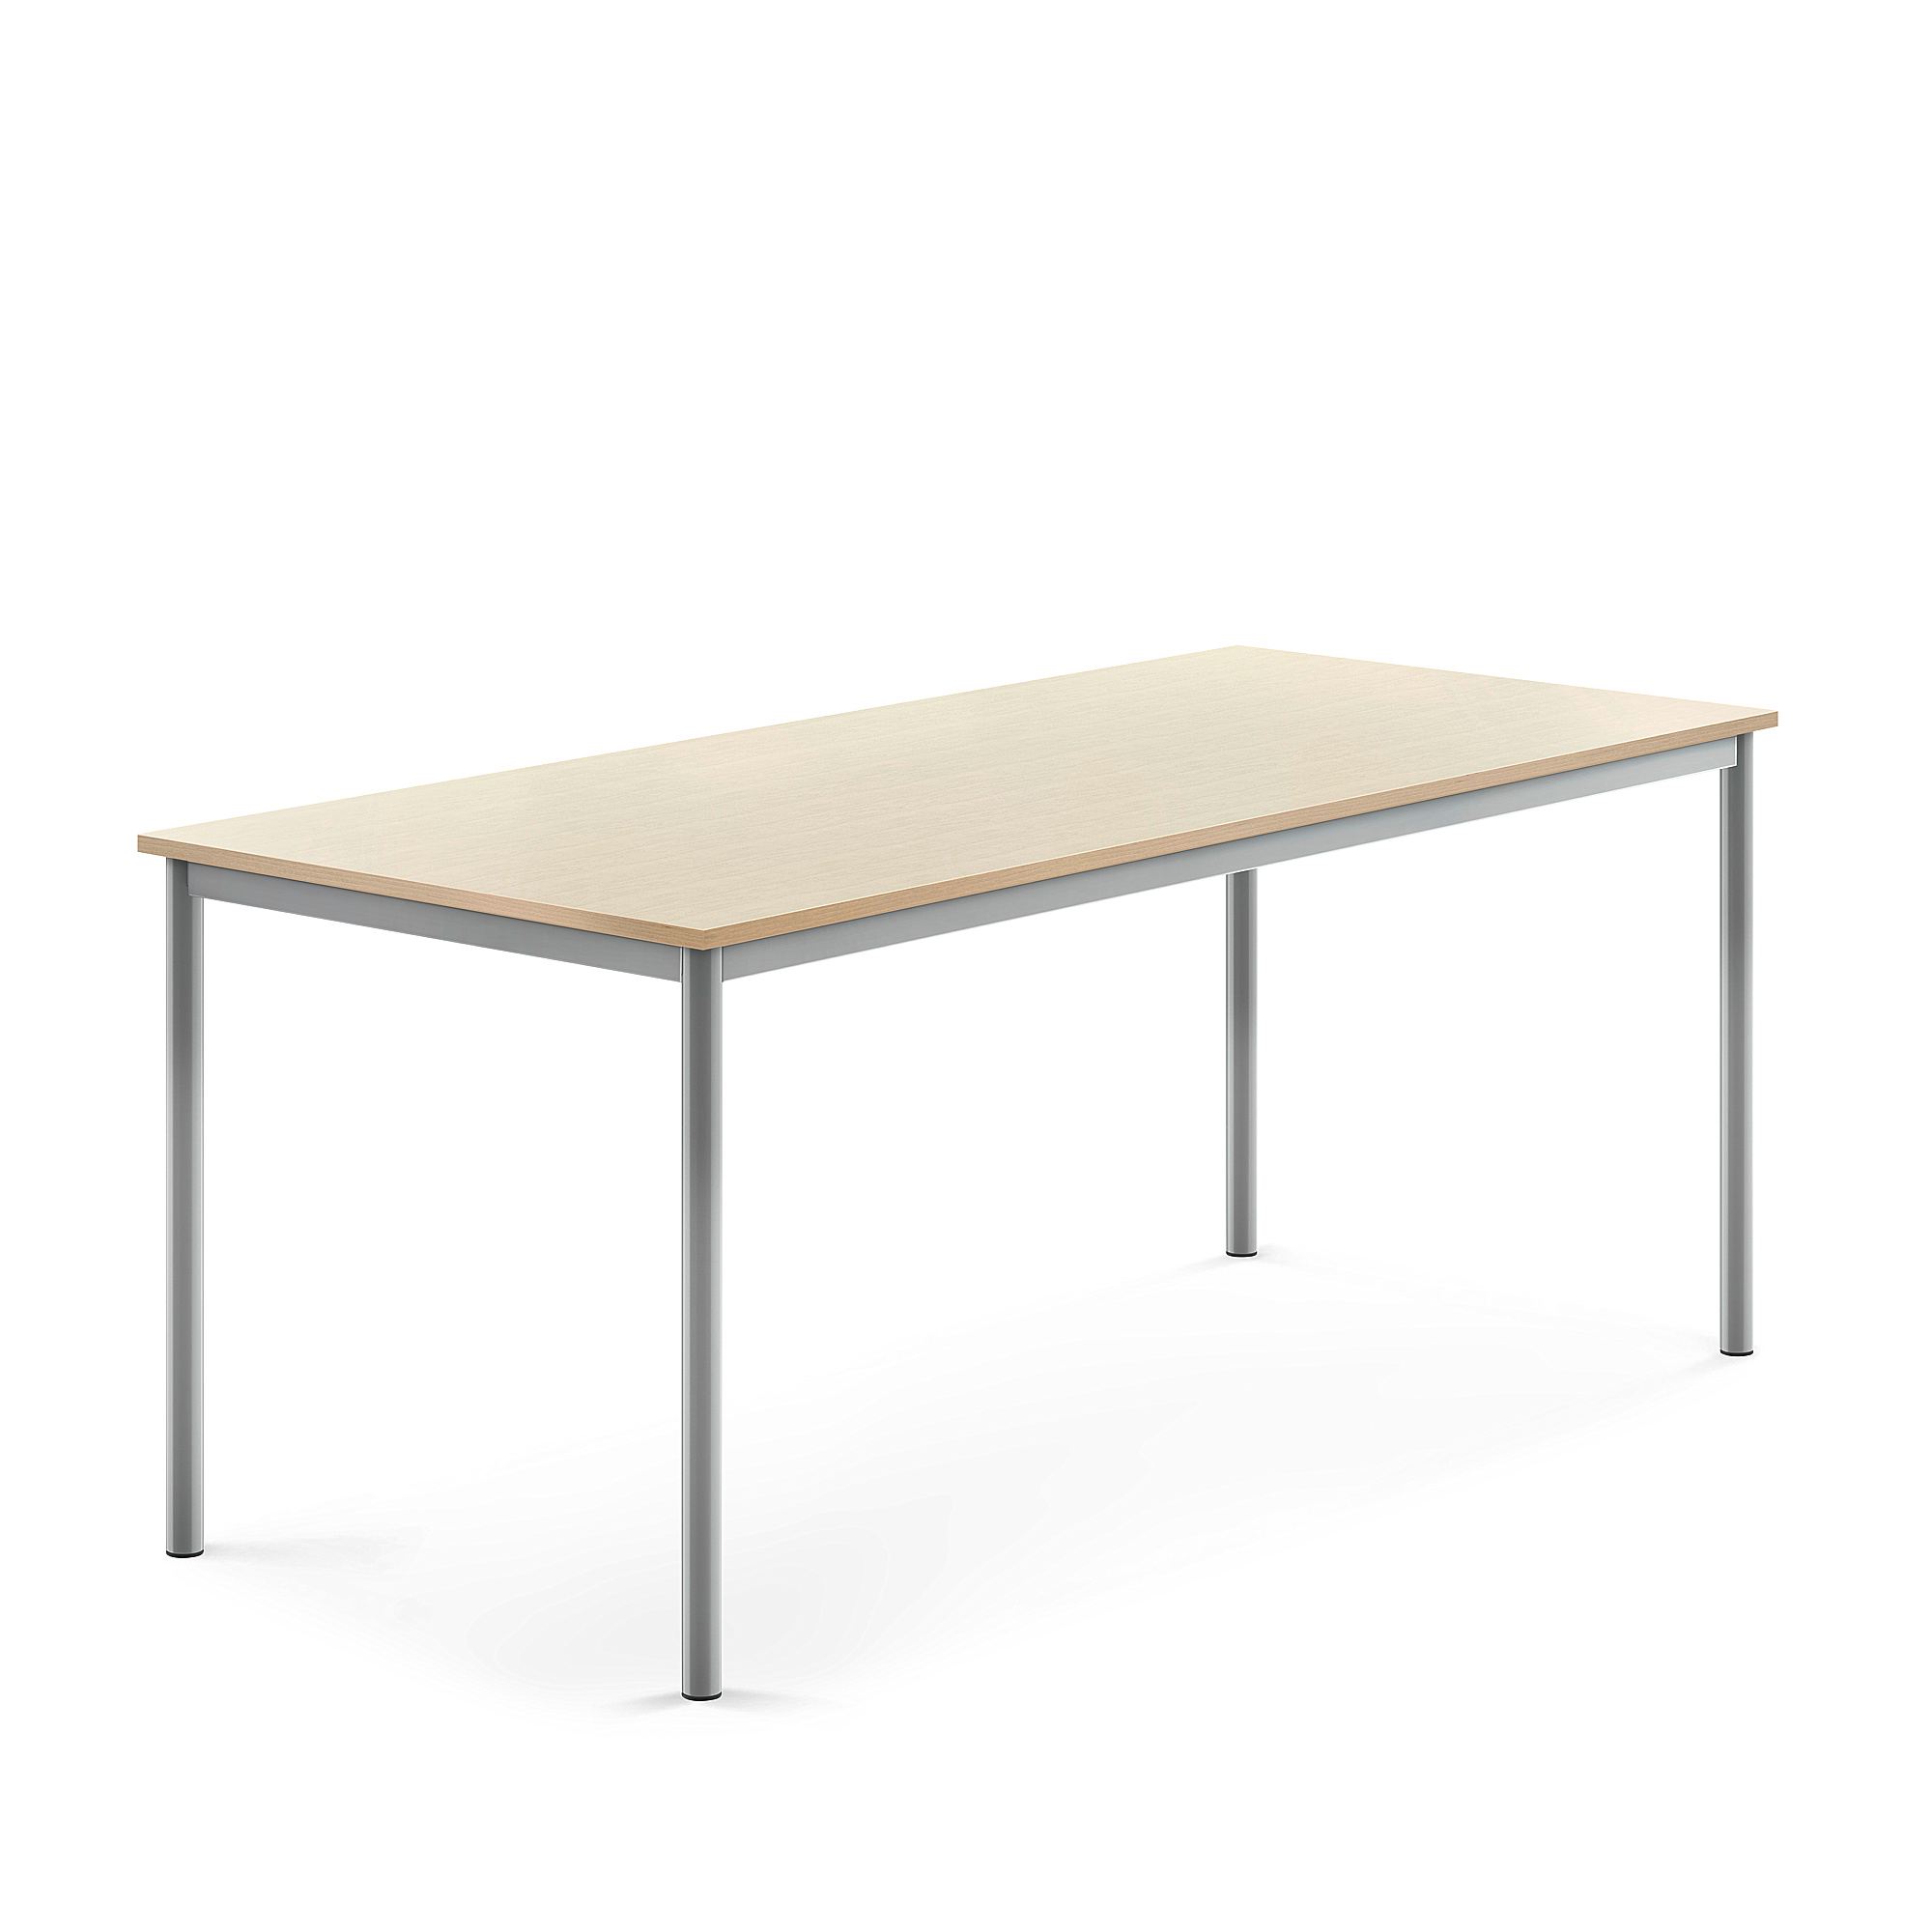 Stůl BORÅS, 1800x800x720 mm, stříbrné nohy, HPL deska, bříza